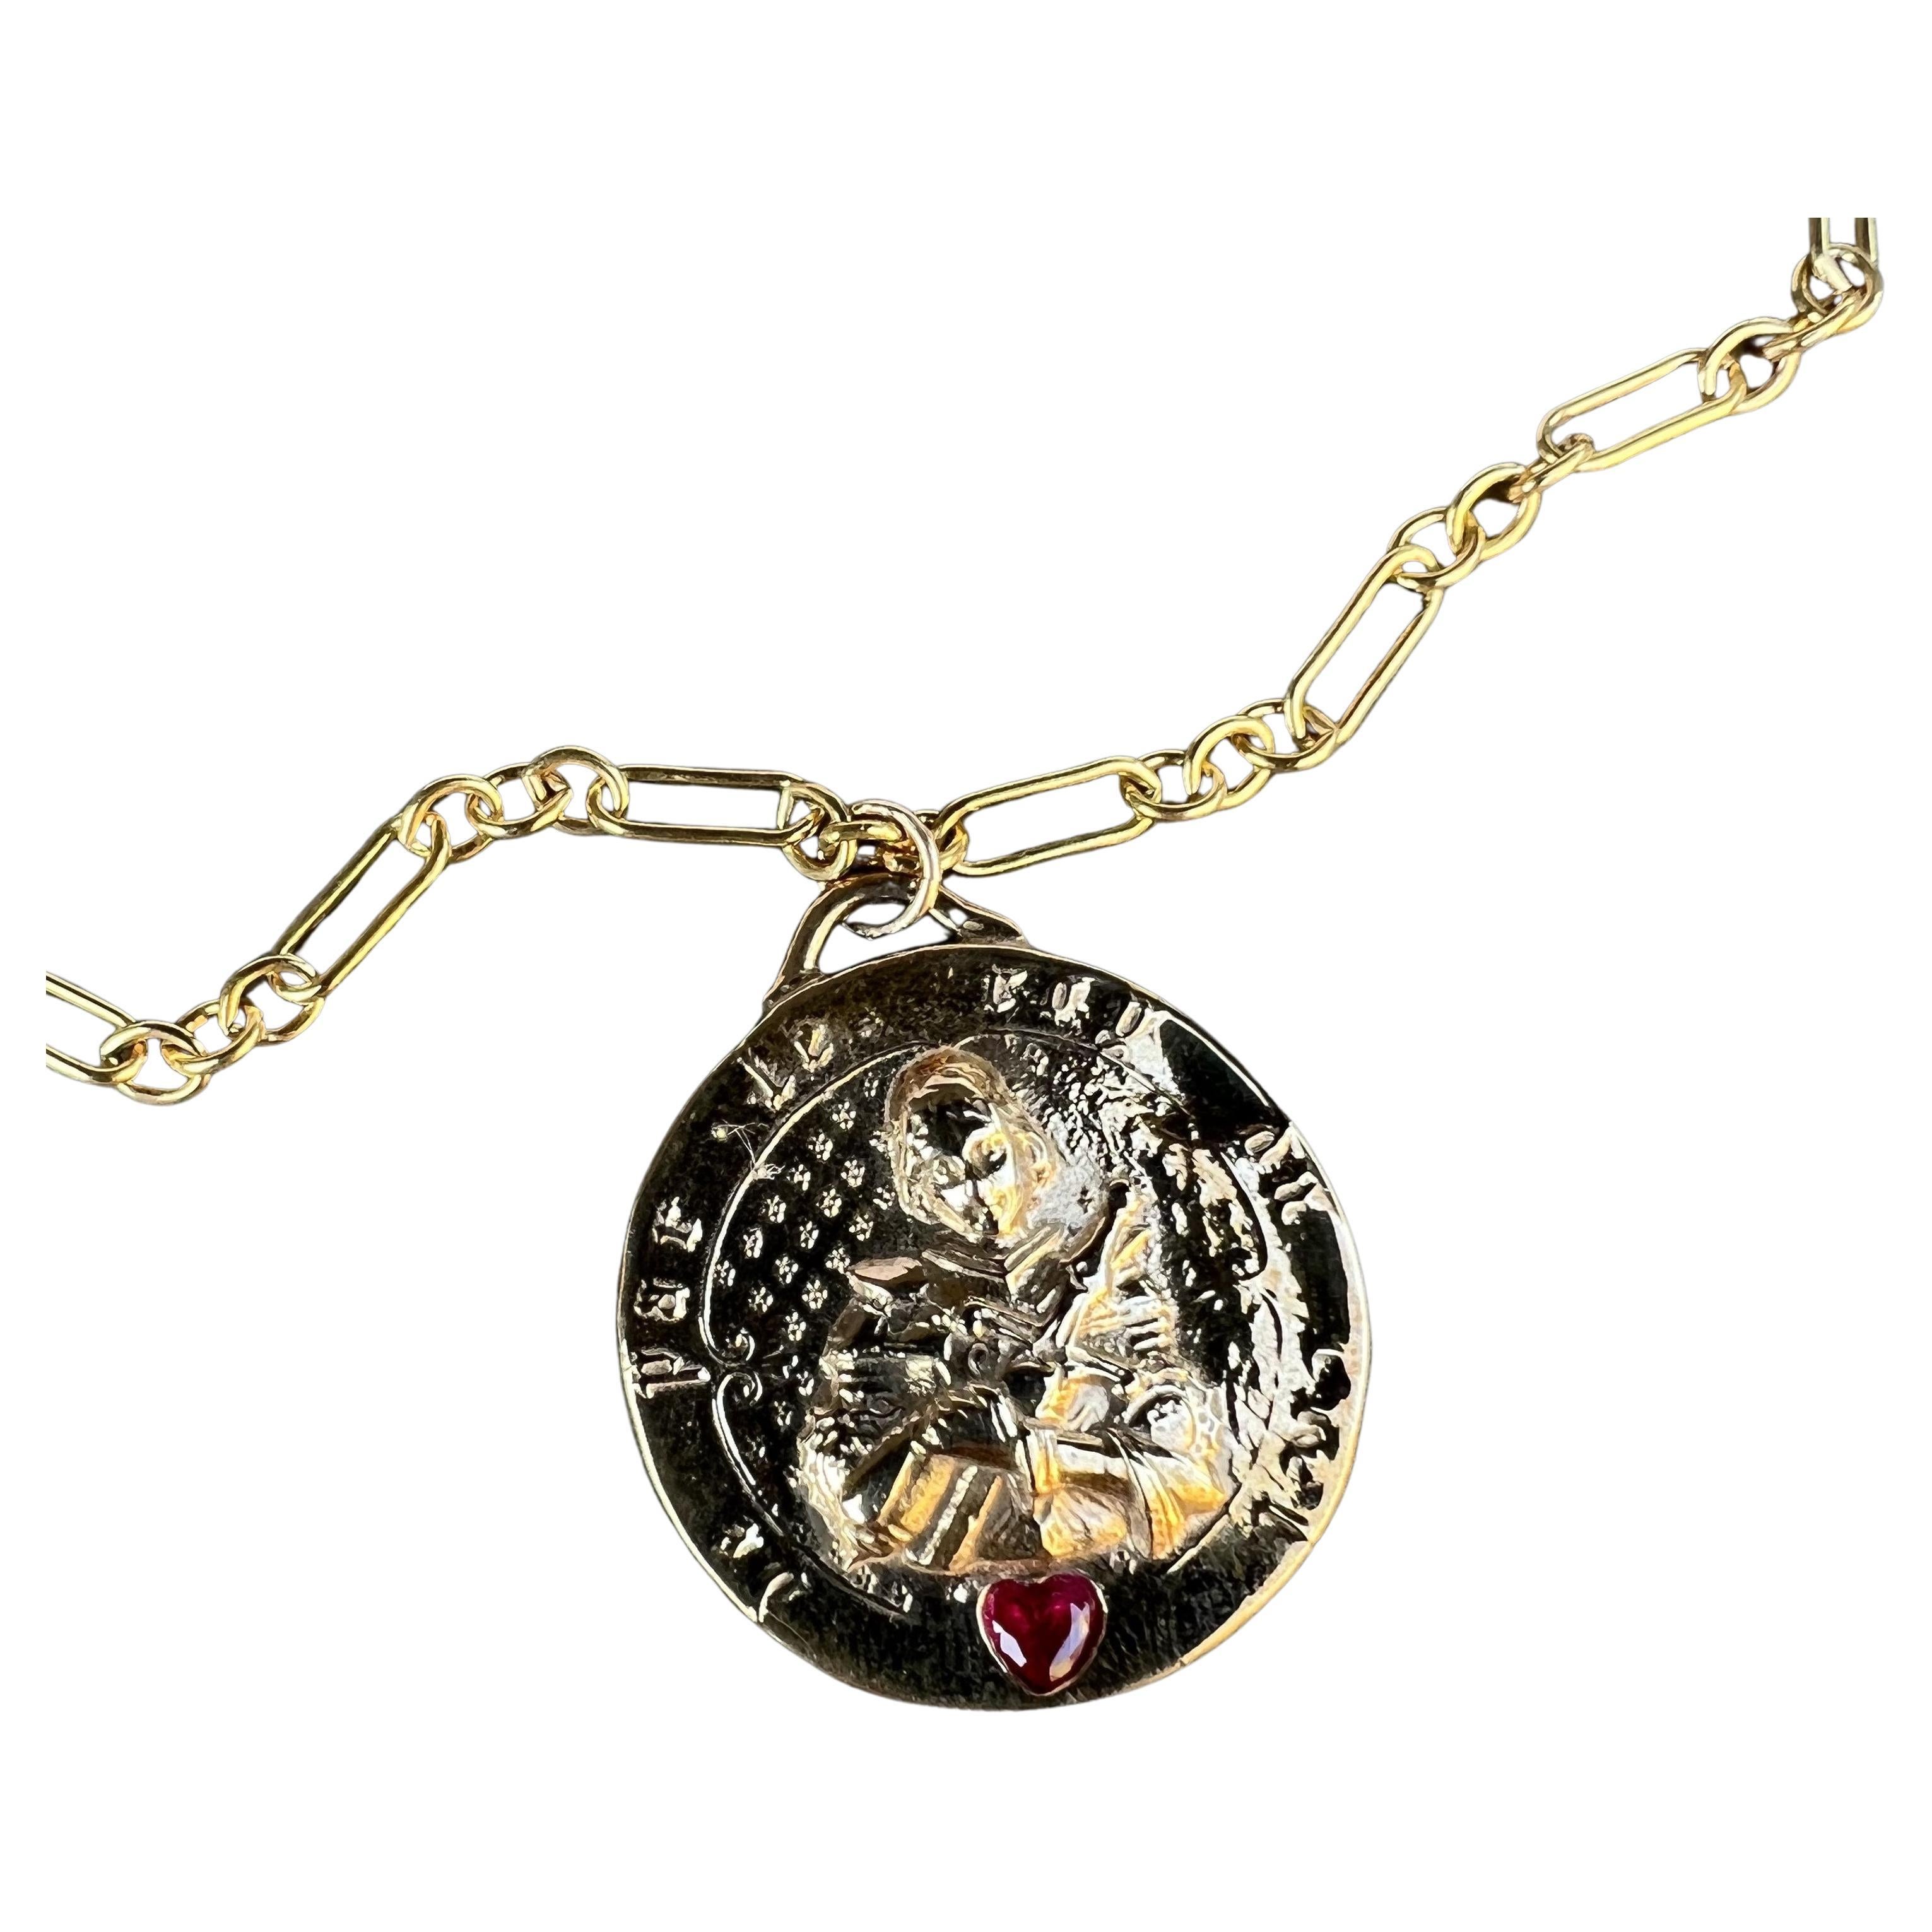 Herz-Rubin-Medaille Jeanne d'Arc Bronze-Anhänger an einer goldfarbenen Kette Halskette 
Designer: J DAUPHIN
28